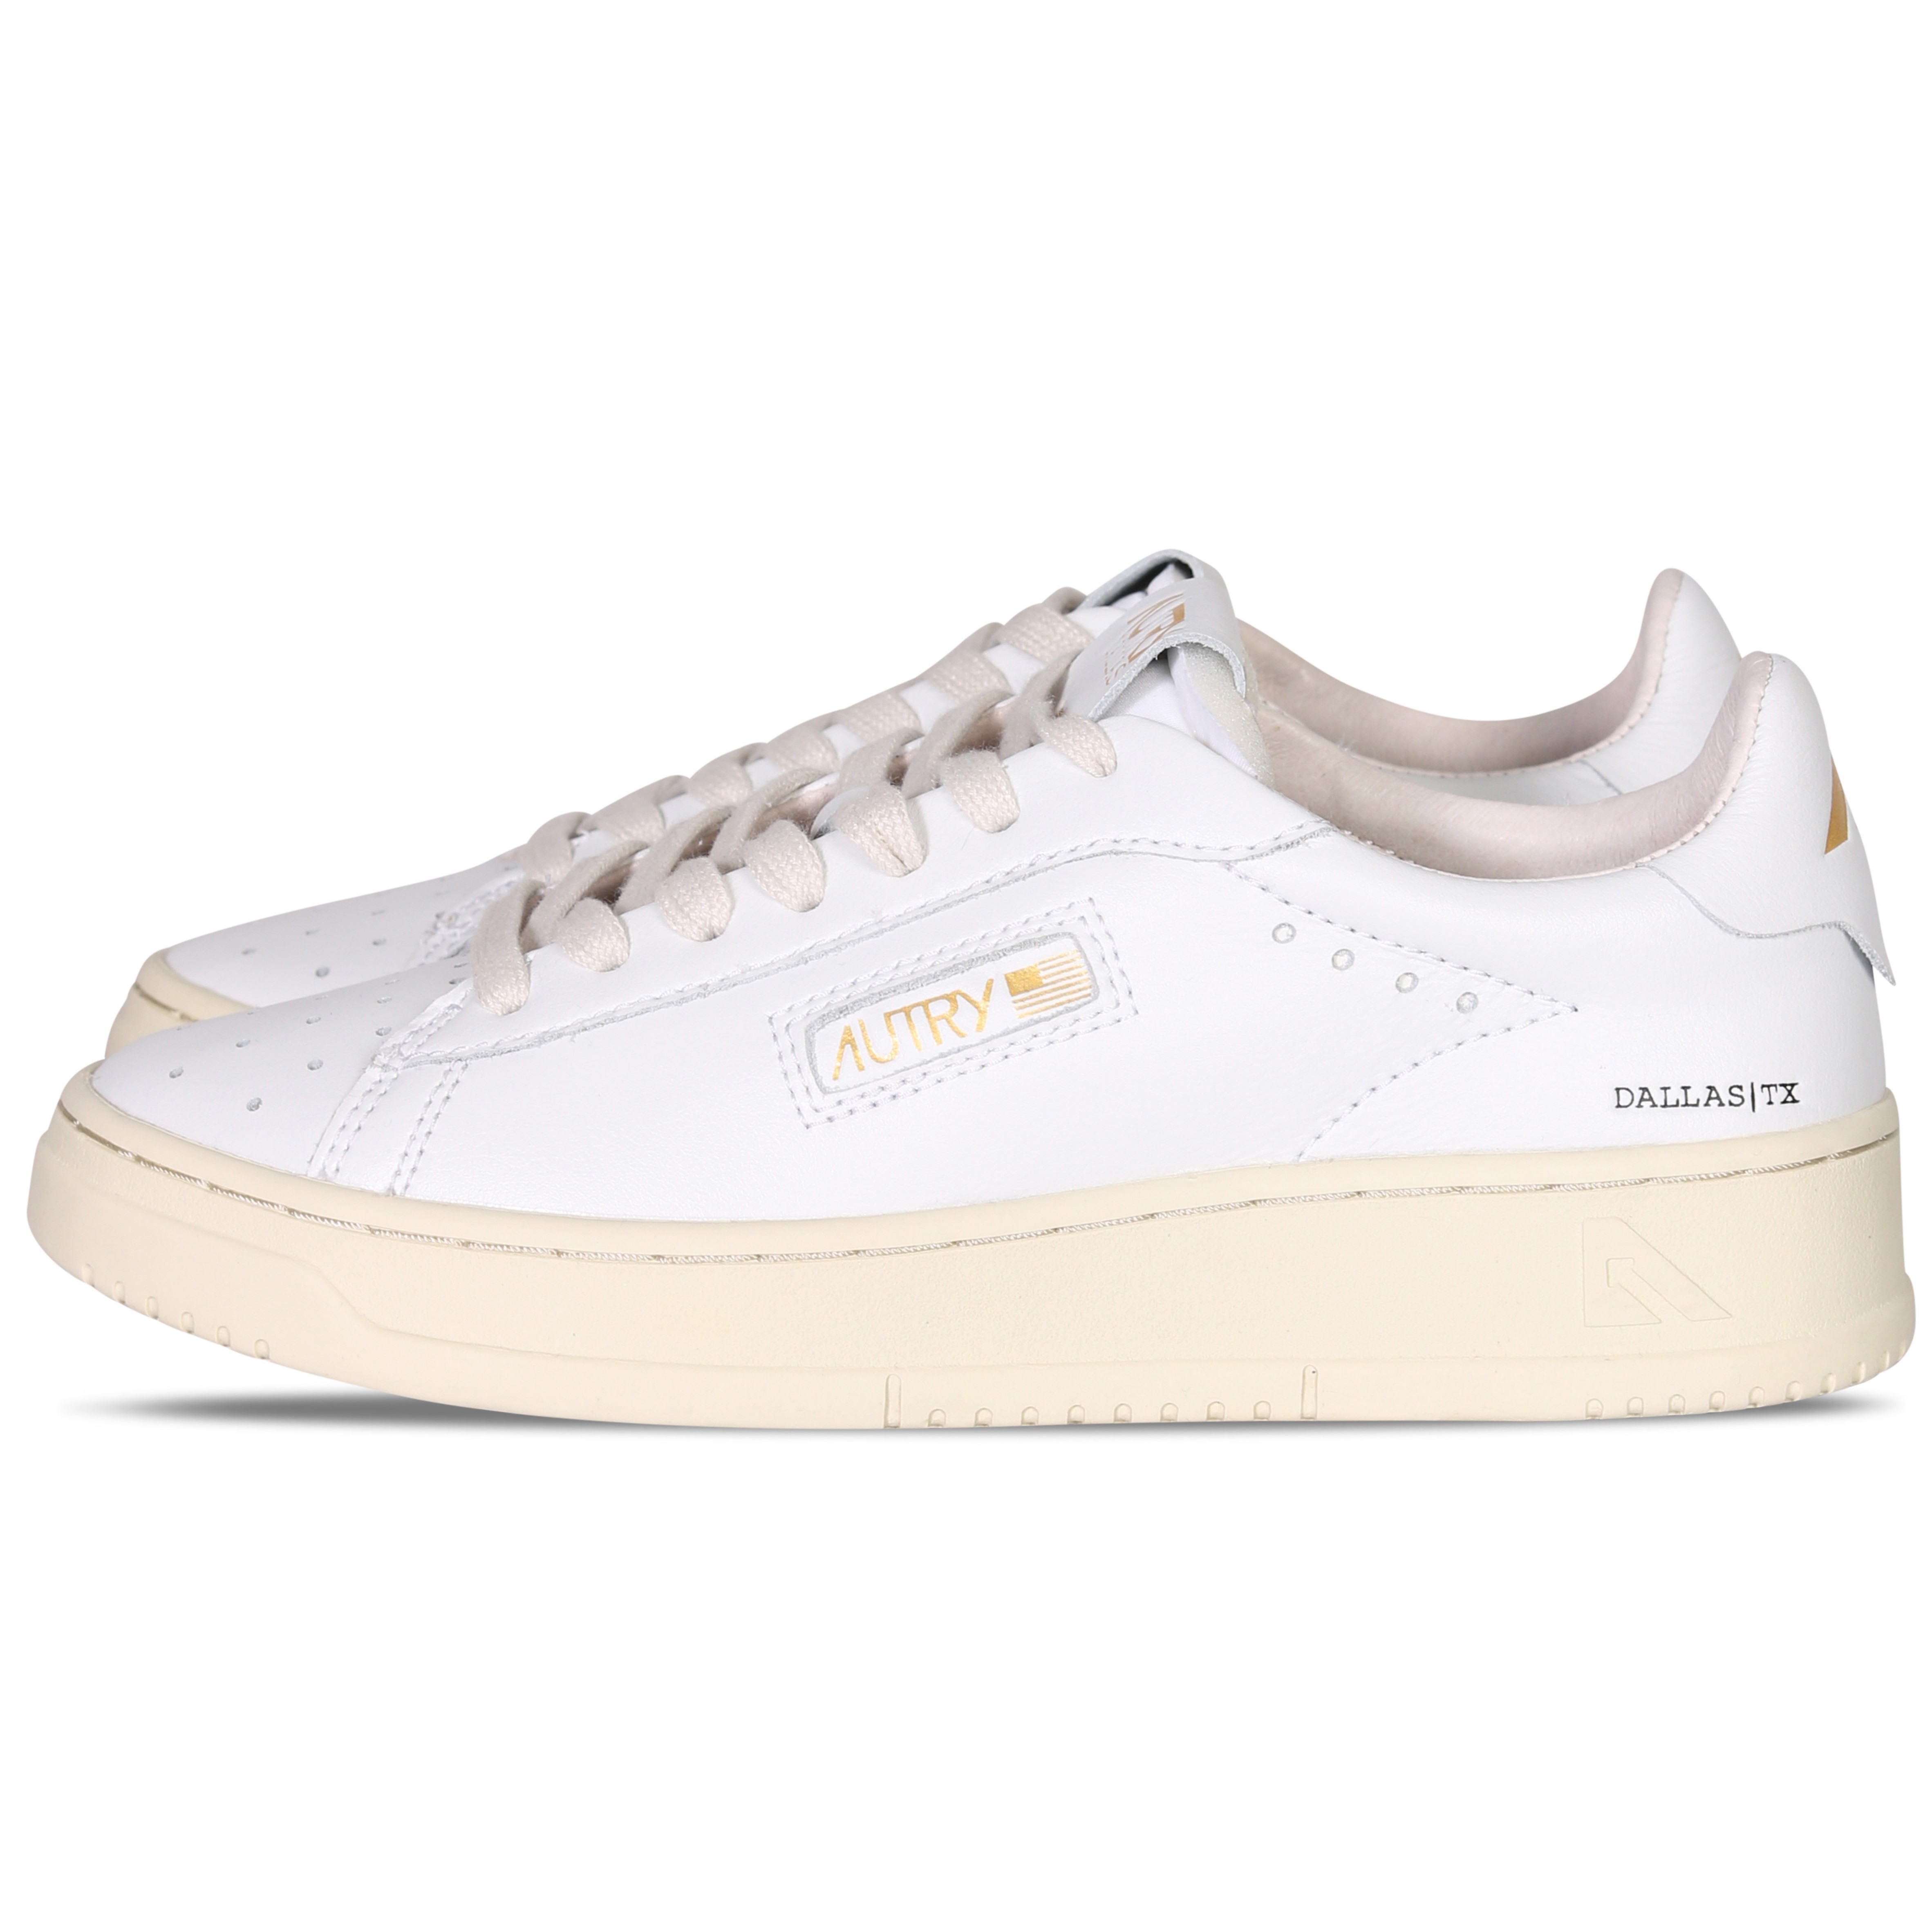 Autry Action Shoes Dallas Low Sneaker White/Platinum 35